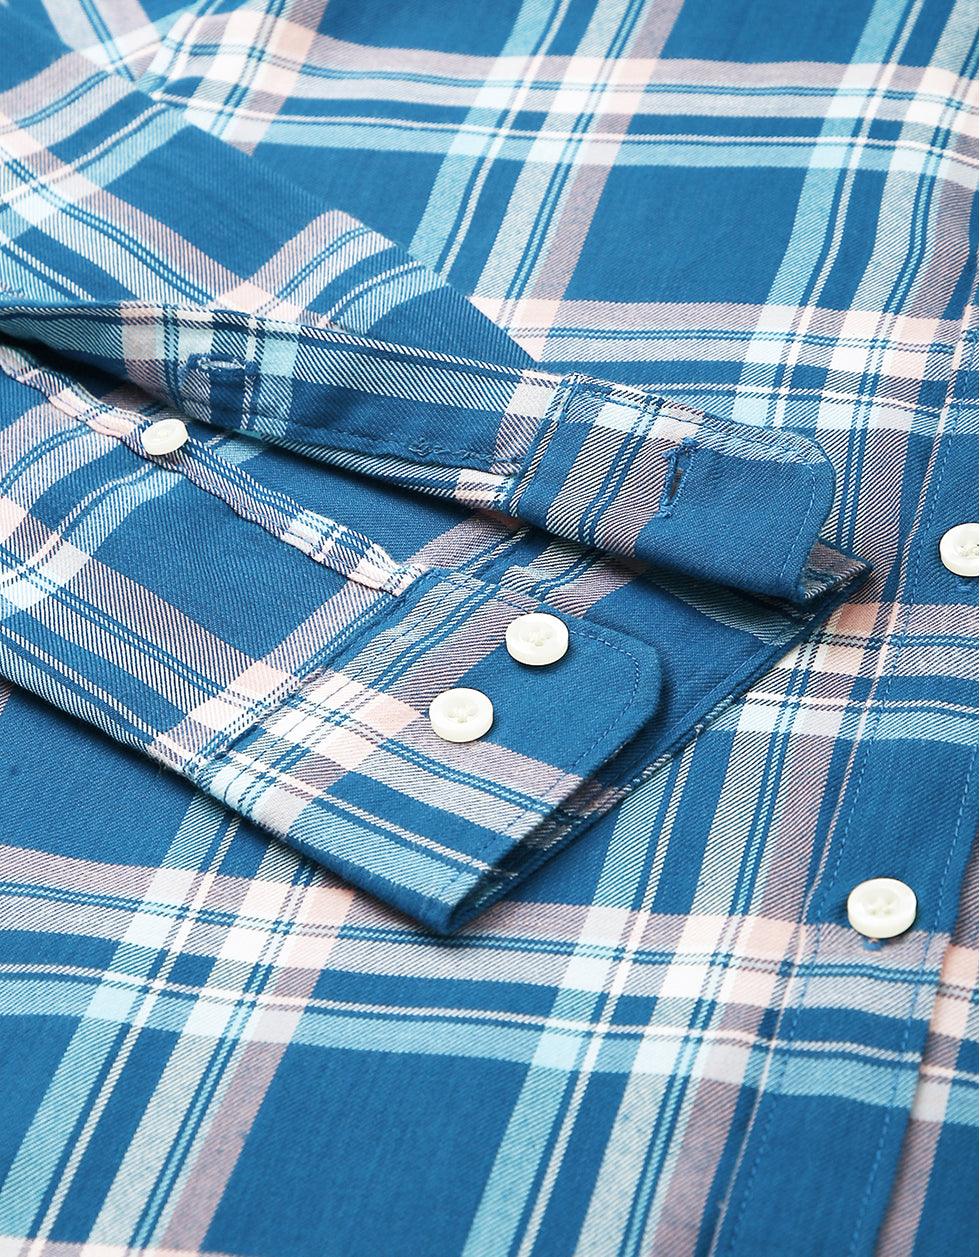 Blue Checks Men's Shirt Veirdo